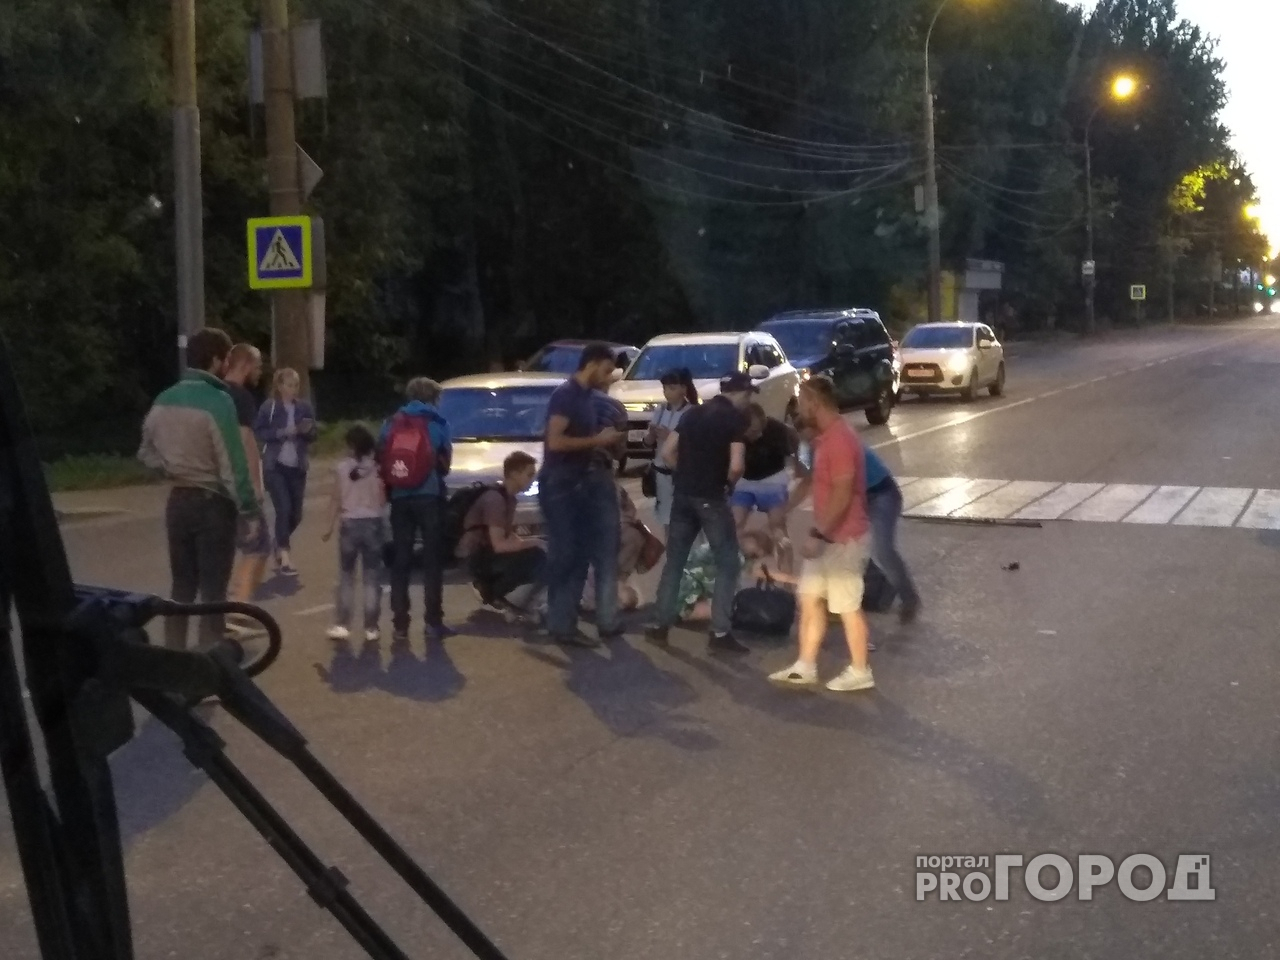 Проклятый переход: на опасной дороге в Ярославле снова сбили ребенка